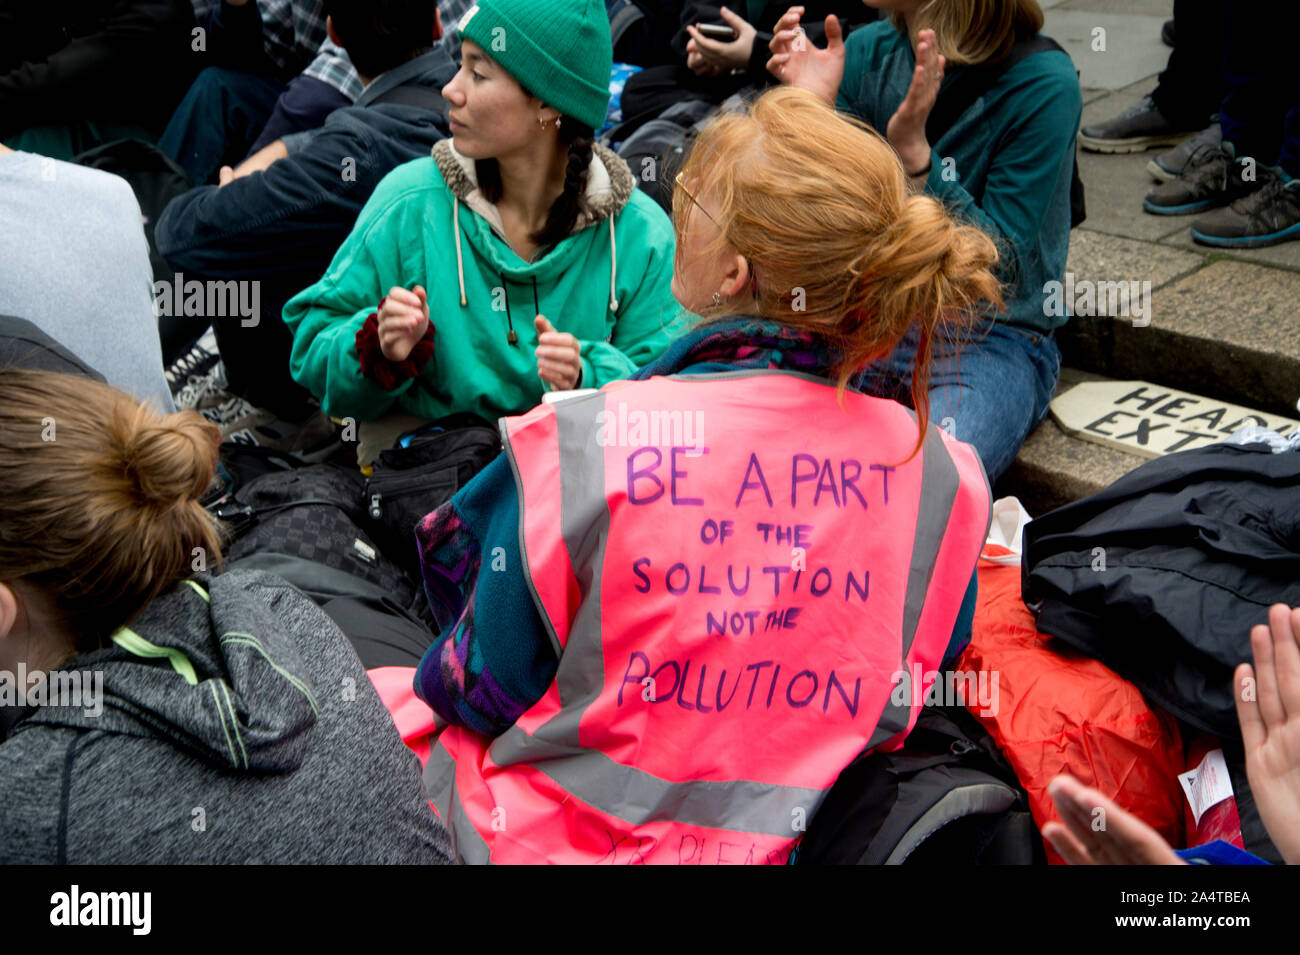 Extinction de la rébellion, le centre de Londres, 8 octobre 2019. Les militants climatiques occupent la route. Banque D'Images